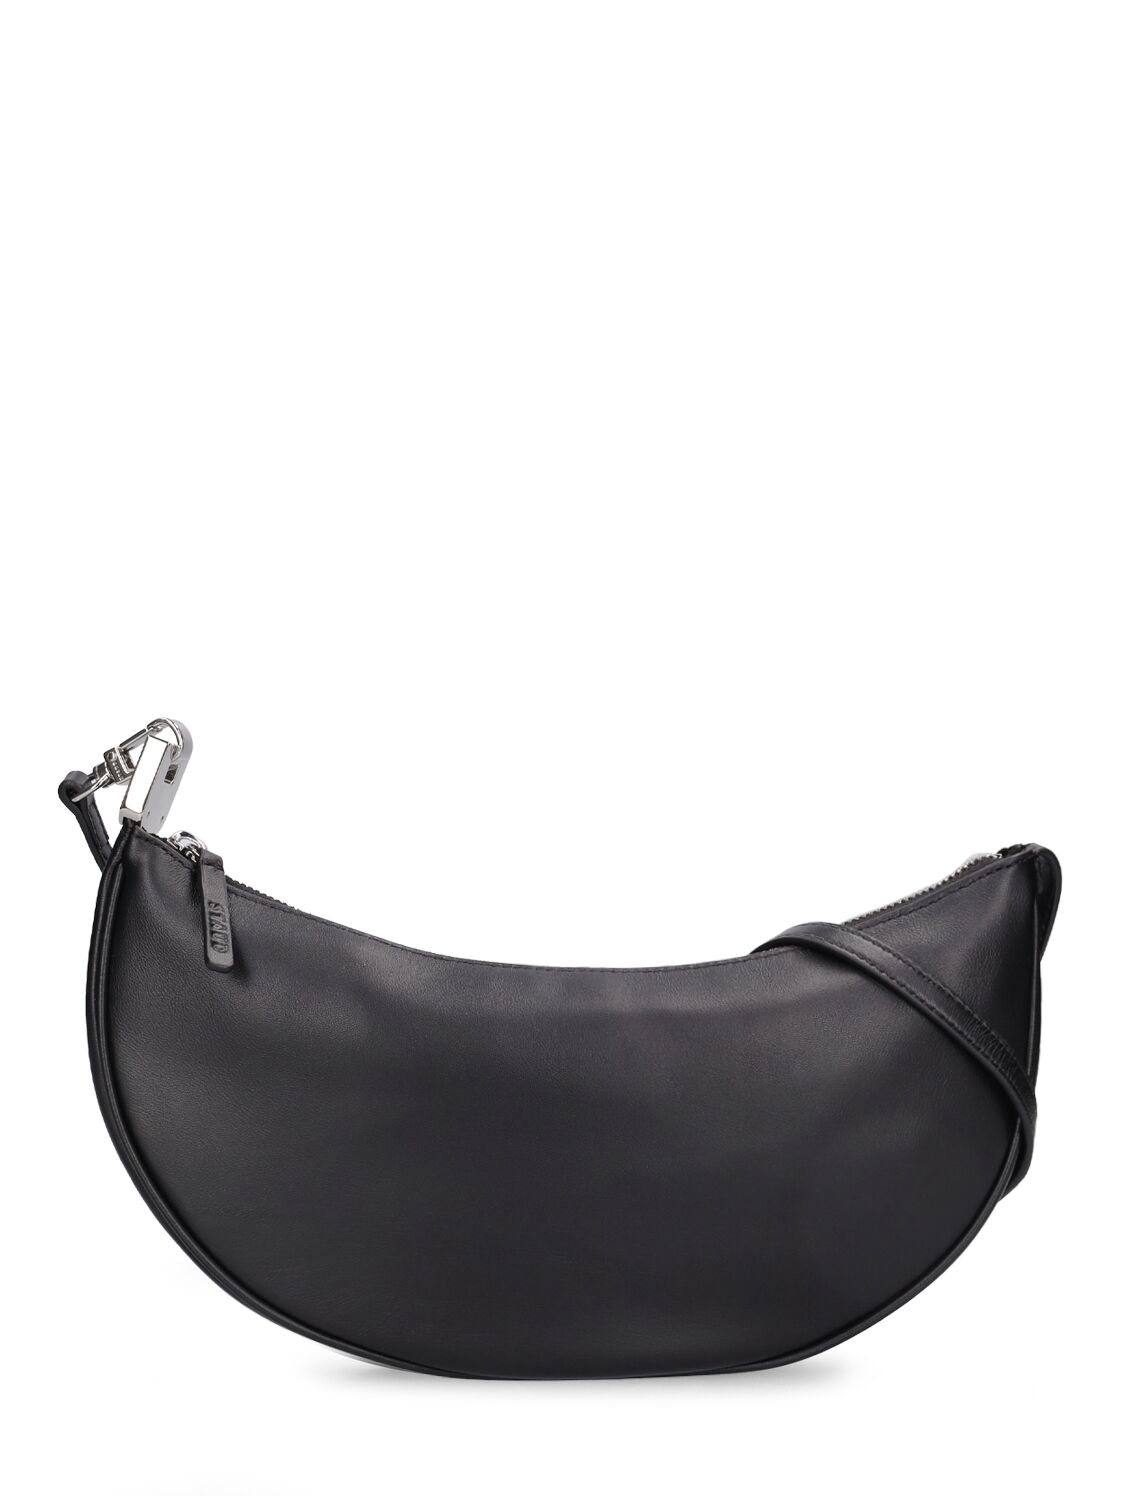 Staud Walker Leather Shoulder Bag In Black